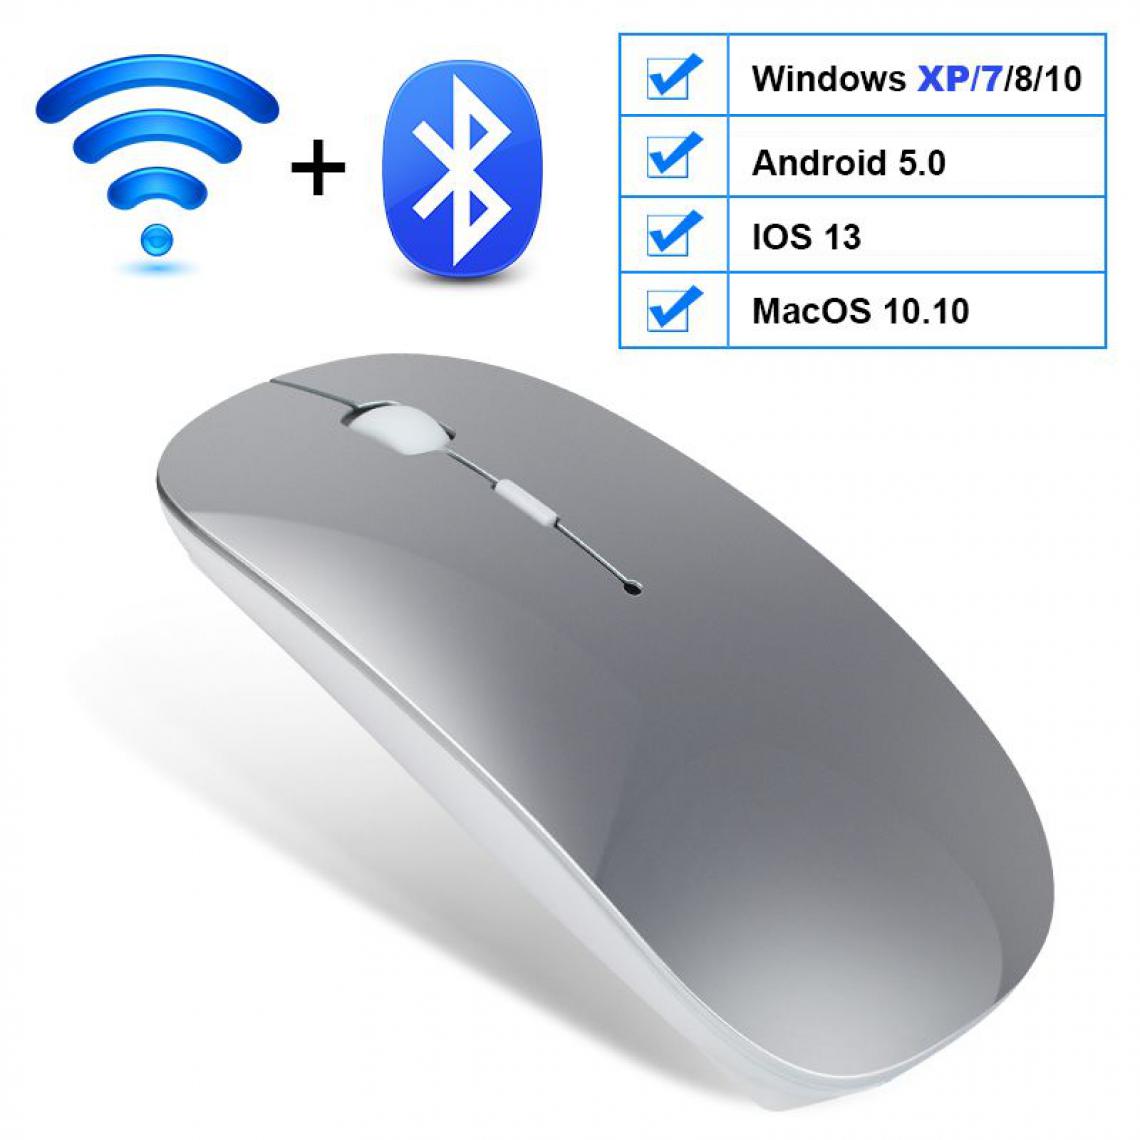 Generic - Souris sans fil, USB Bluetooth 2.4Ghz, silencieux, ergonomique et  rechargeable , compatible Windows / Android / IOS 13 /  Mac OS  , 11.2 * 5.7 * 2 cm - Argent  - Souris